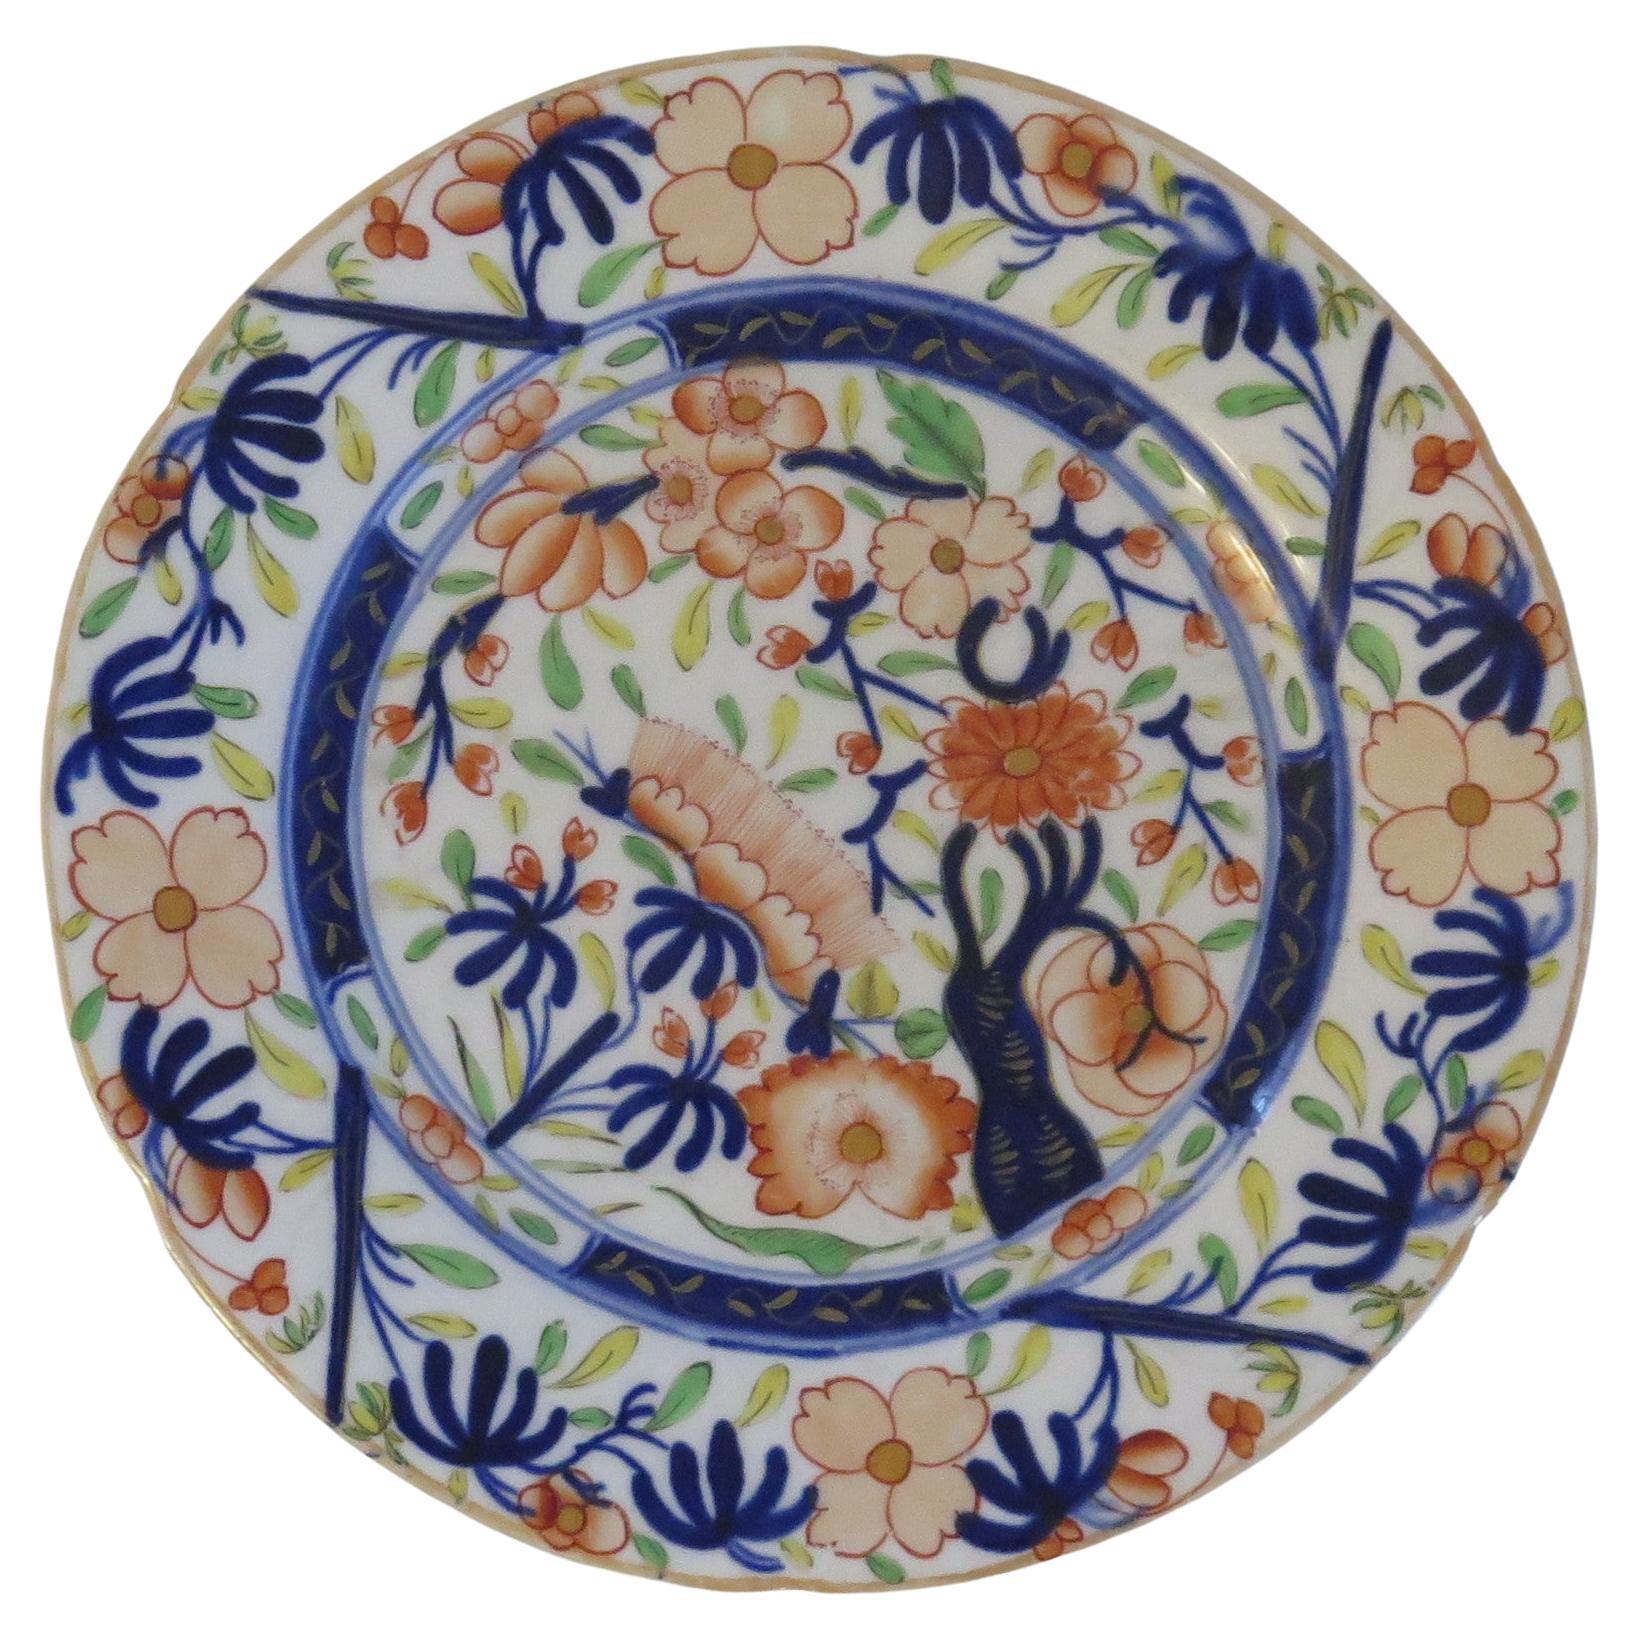 Assiette en porcelaine du début du 19ème siècle finement peinte à la main, Staffordshire, Royaume-Uni, vers 1825